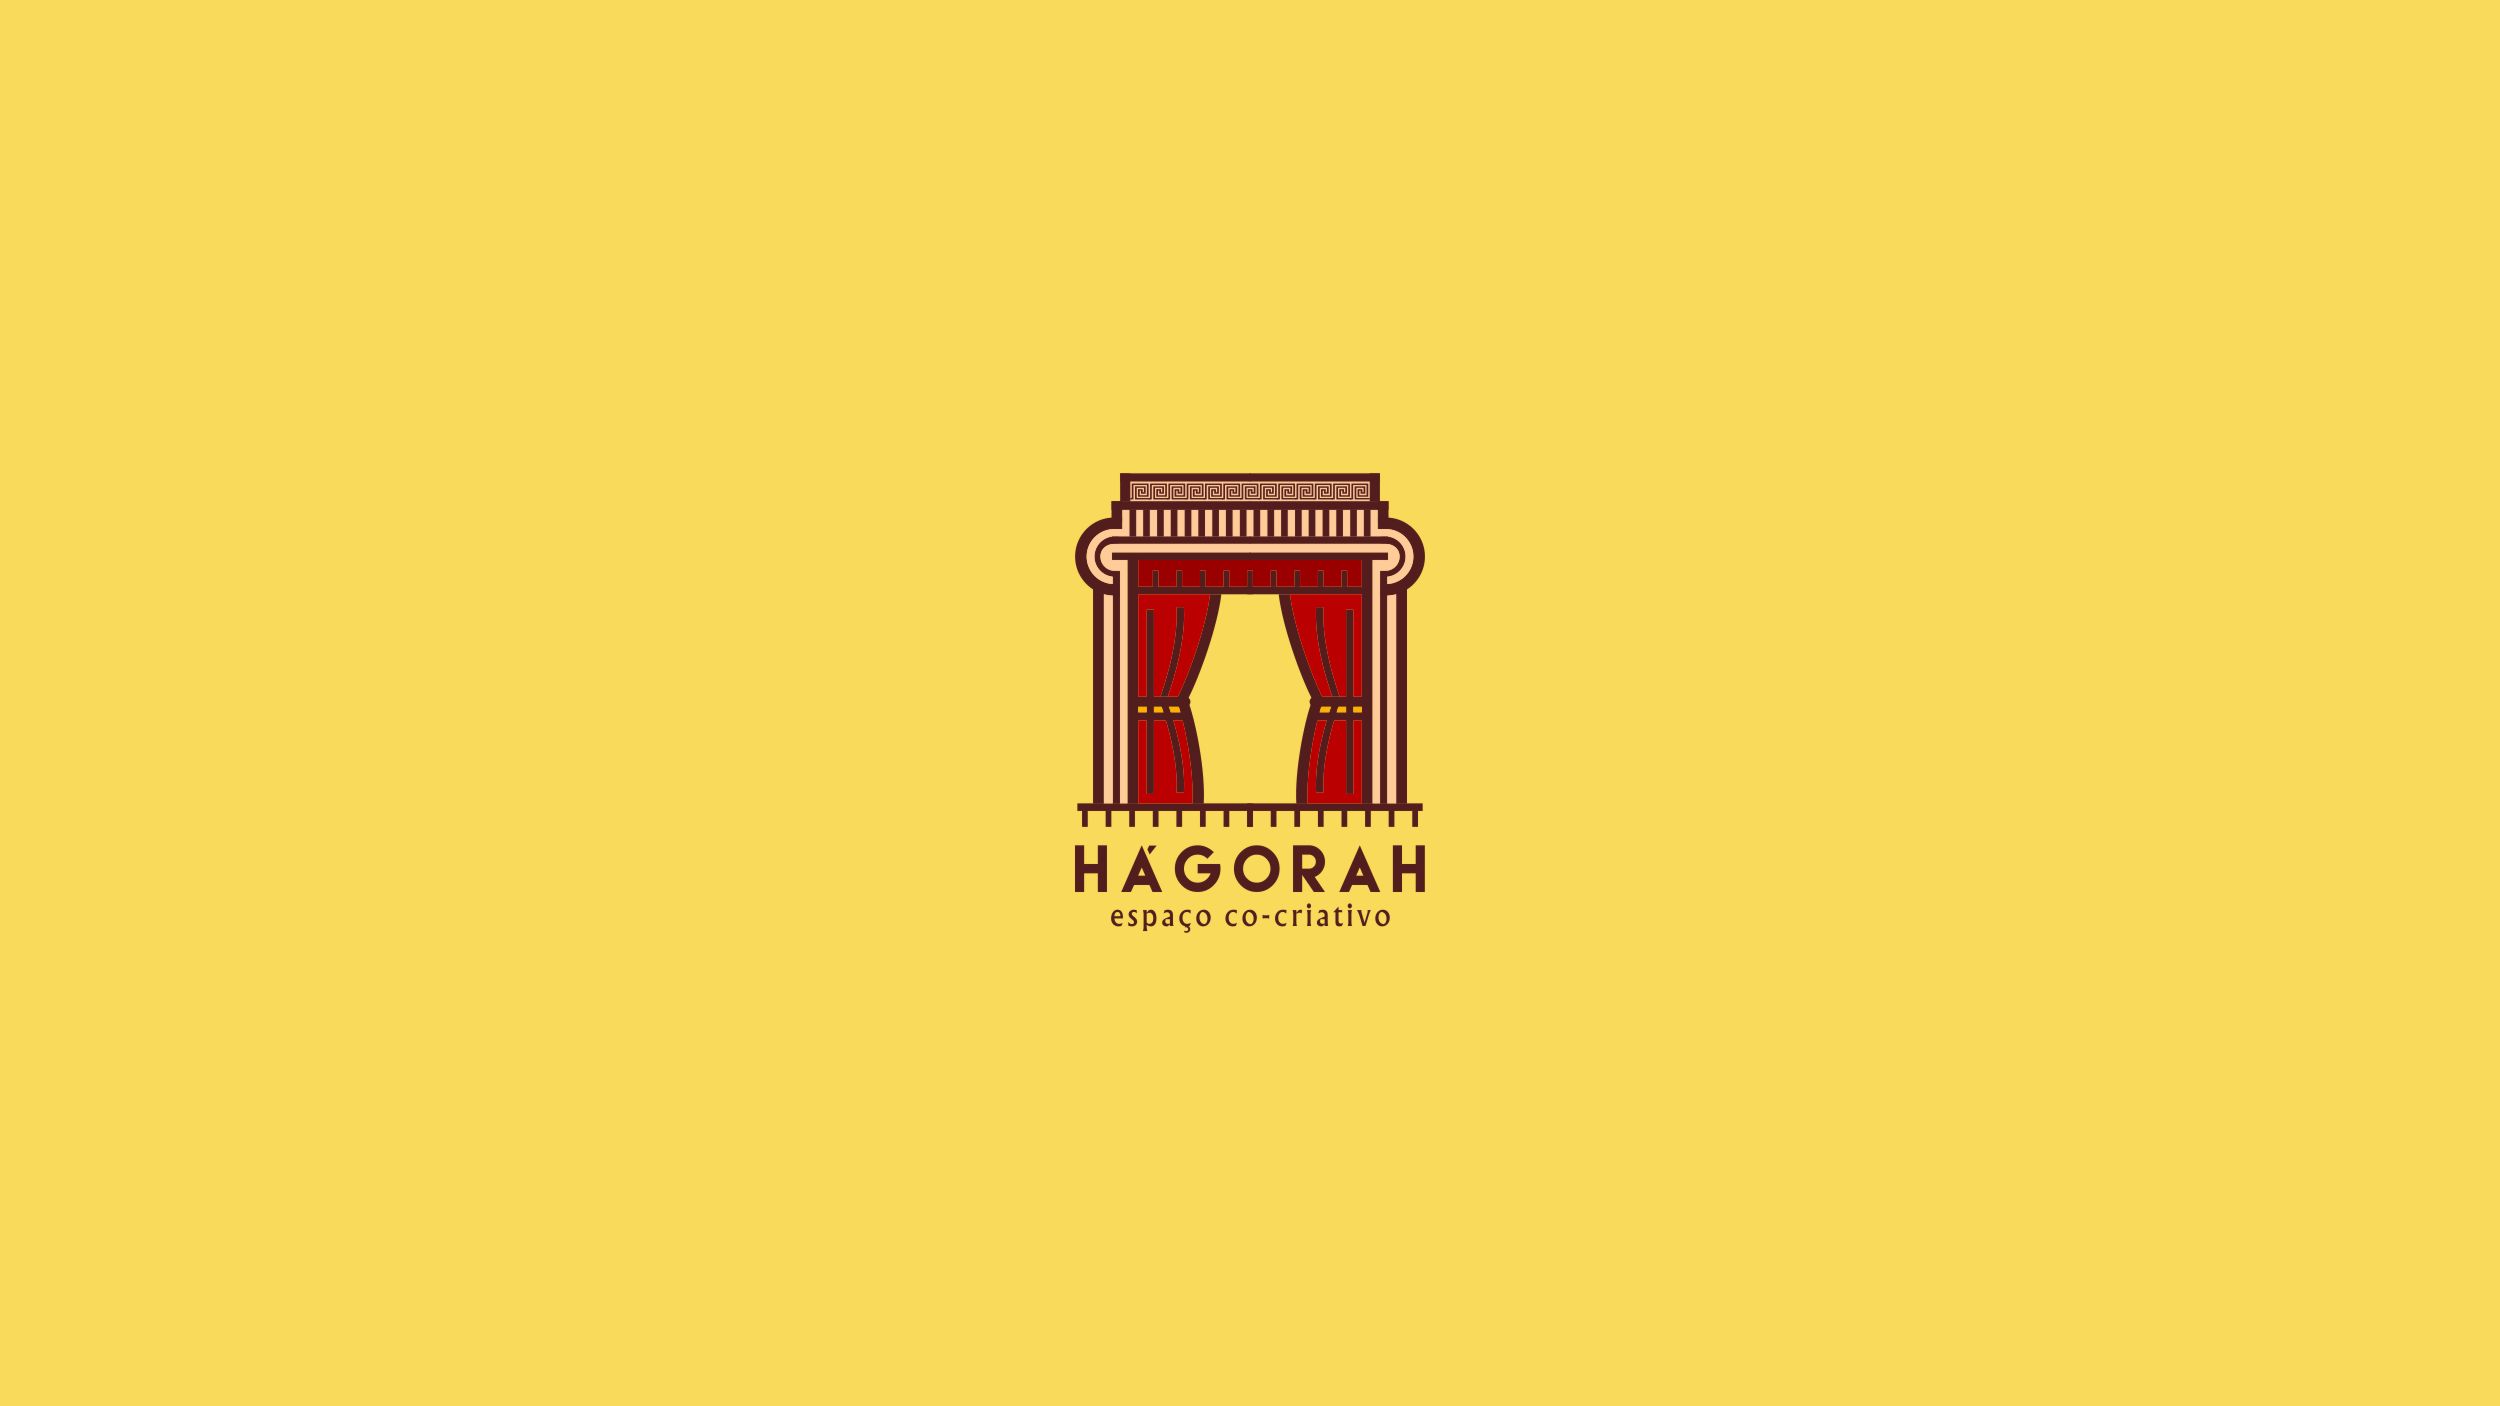 Hágorah